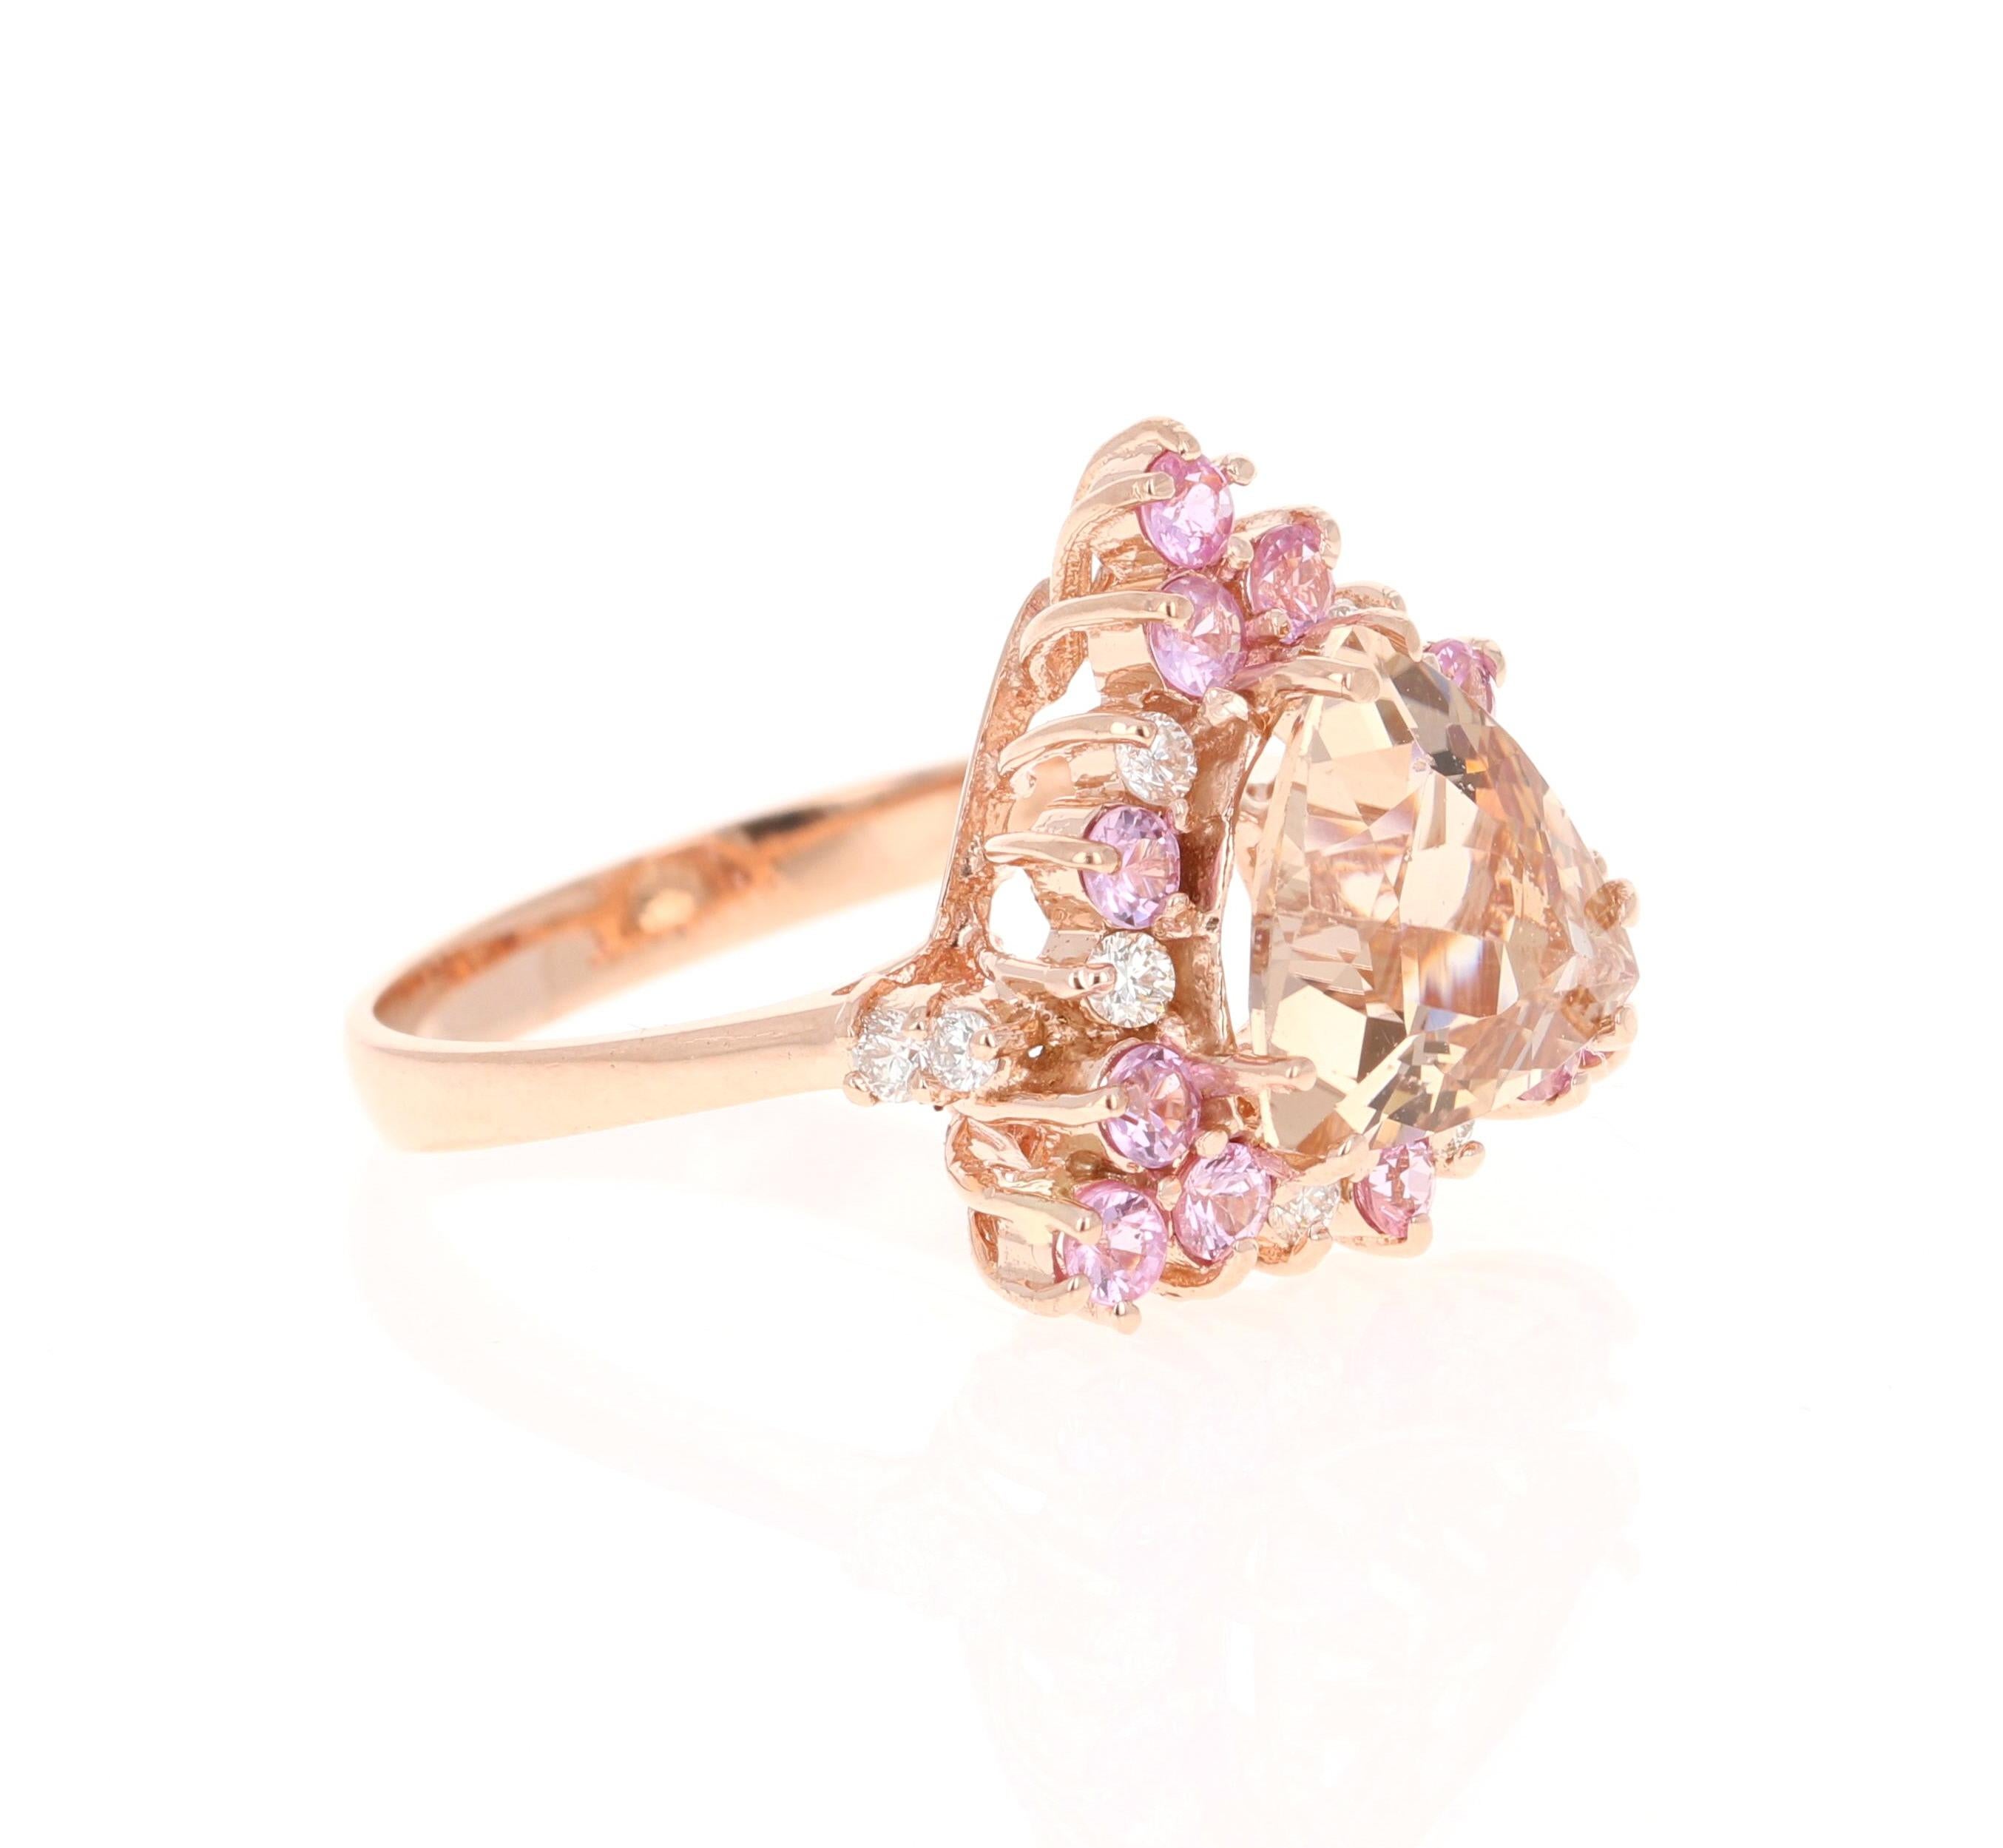 Dieser Ring hat ein 2,28 Karat Trillion Cut Morganite zusammen mit 12 Round Cut Pink Sapphires, die 0,73 Karat wiegen. Außerdem gibt es 10 Diamanten im Rundschliff mit einem Gewicht von 0,26 Karat. (Reinheit: VS, Farbe: H)
Das Gesamtkaratgewicht des